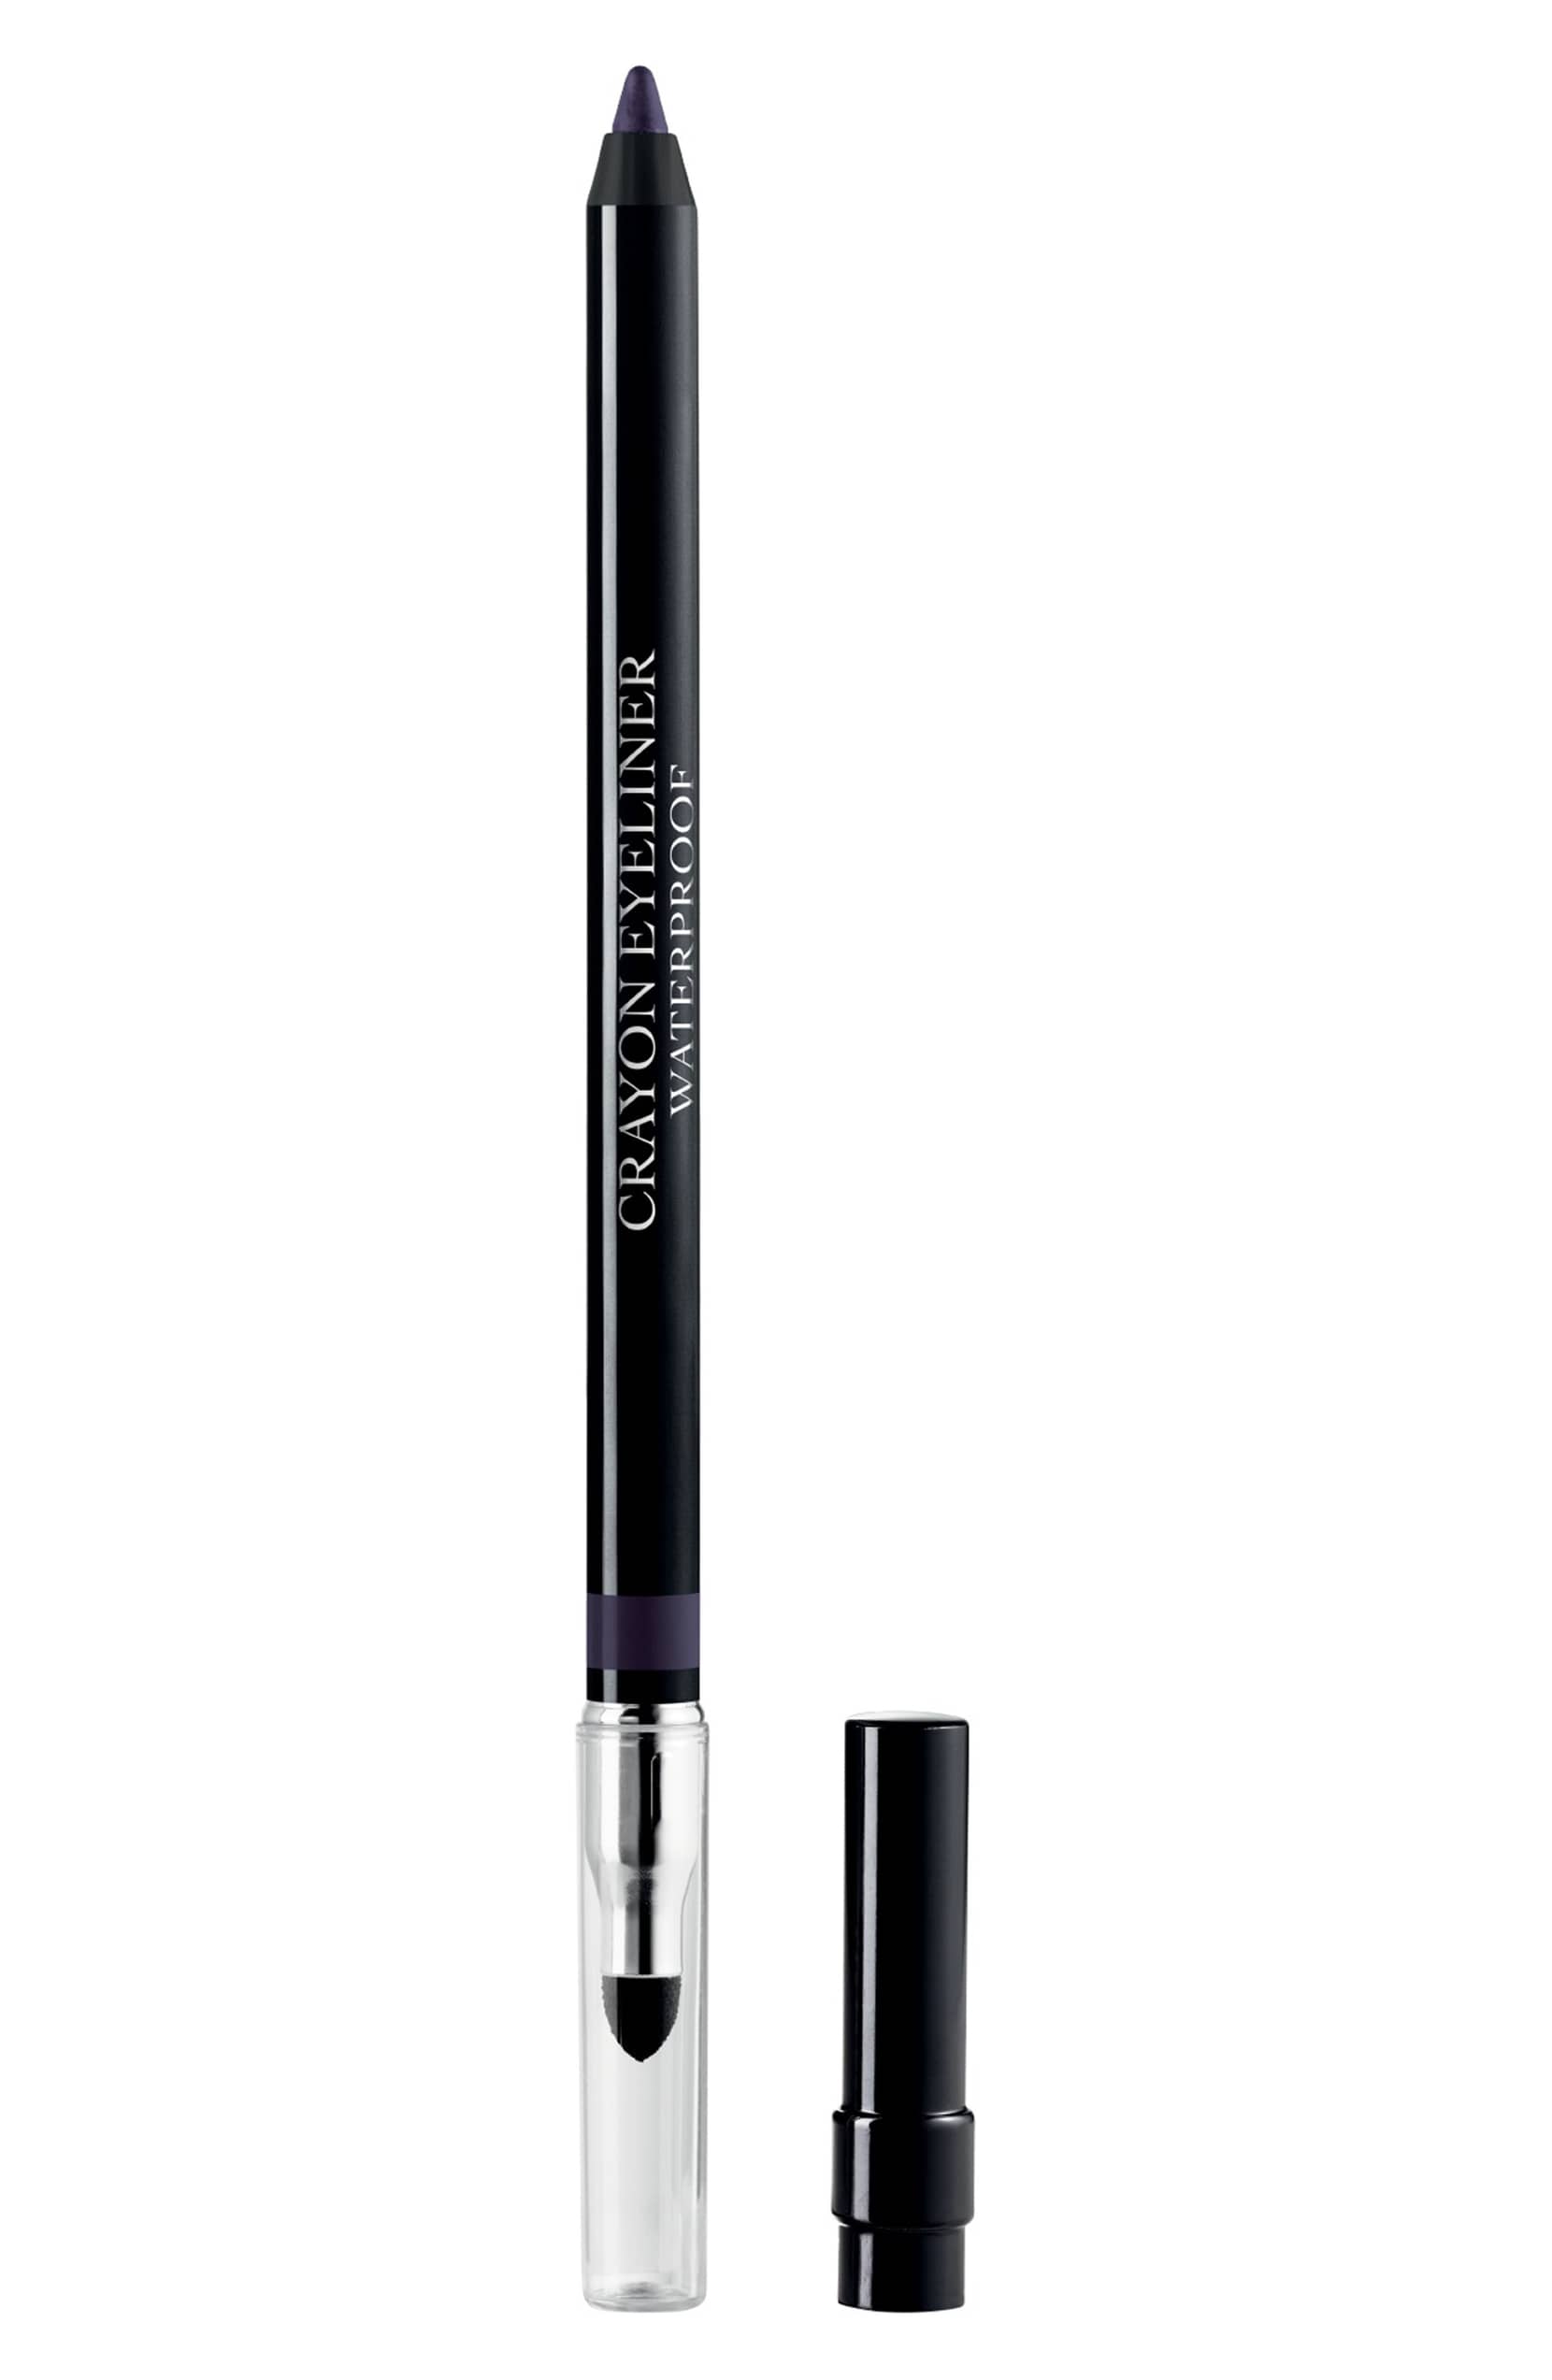 Dior Long-wear Waterproof Eyeliner Pencil